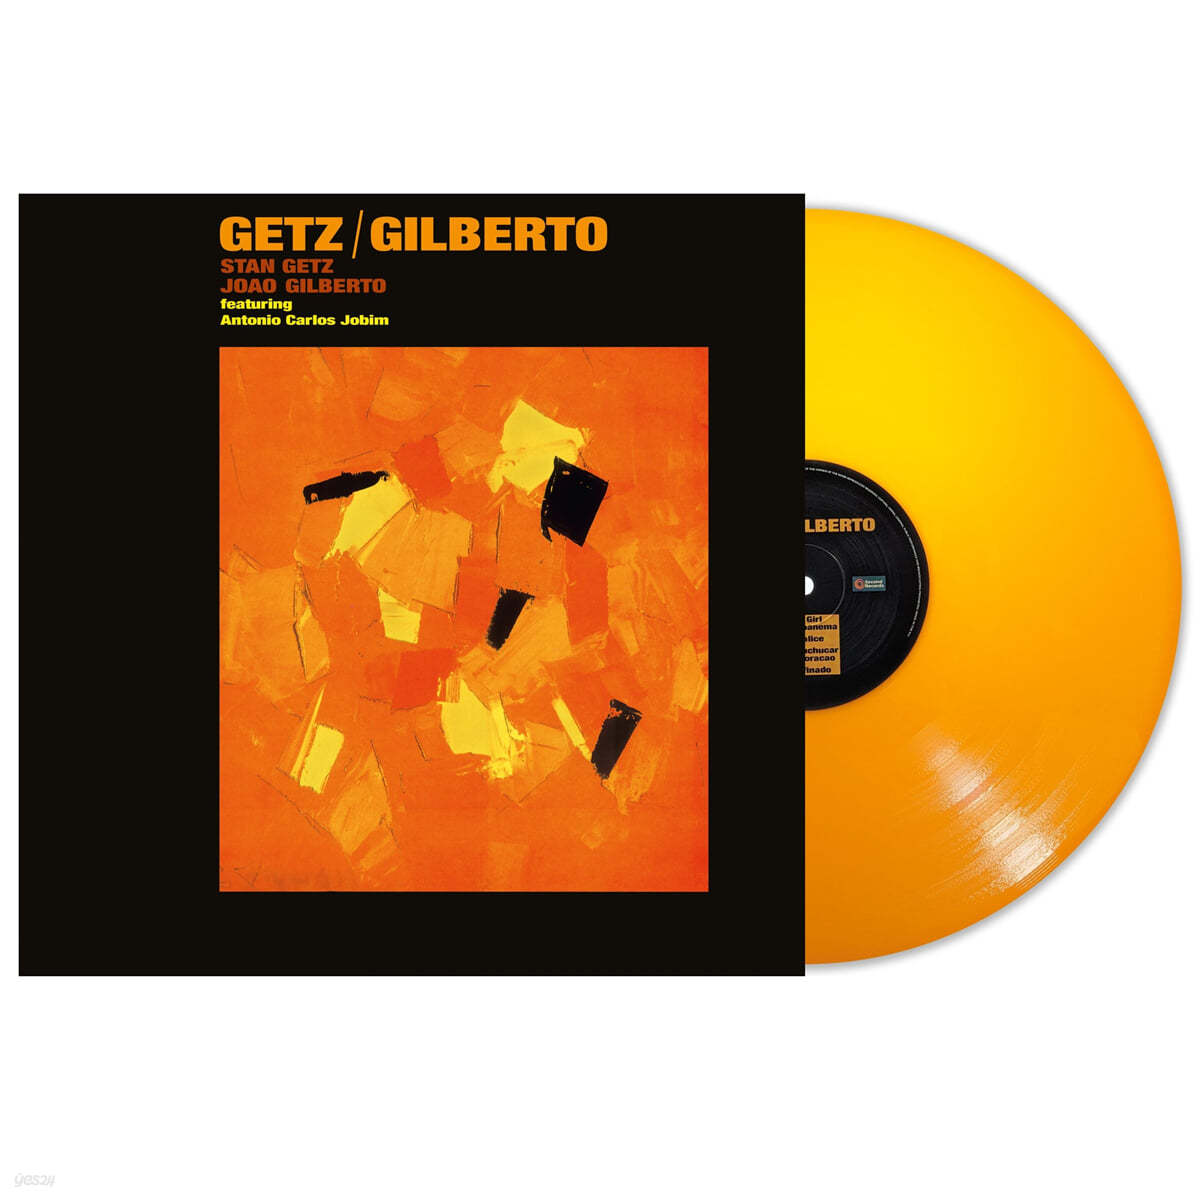 Stan Getz / Joao Gilberto (스탄 게츠 / 주앙 질베르토) - Getz / Gilberto [오렌지 컬러 LP]